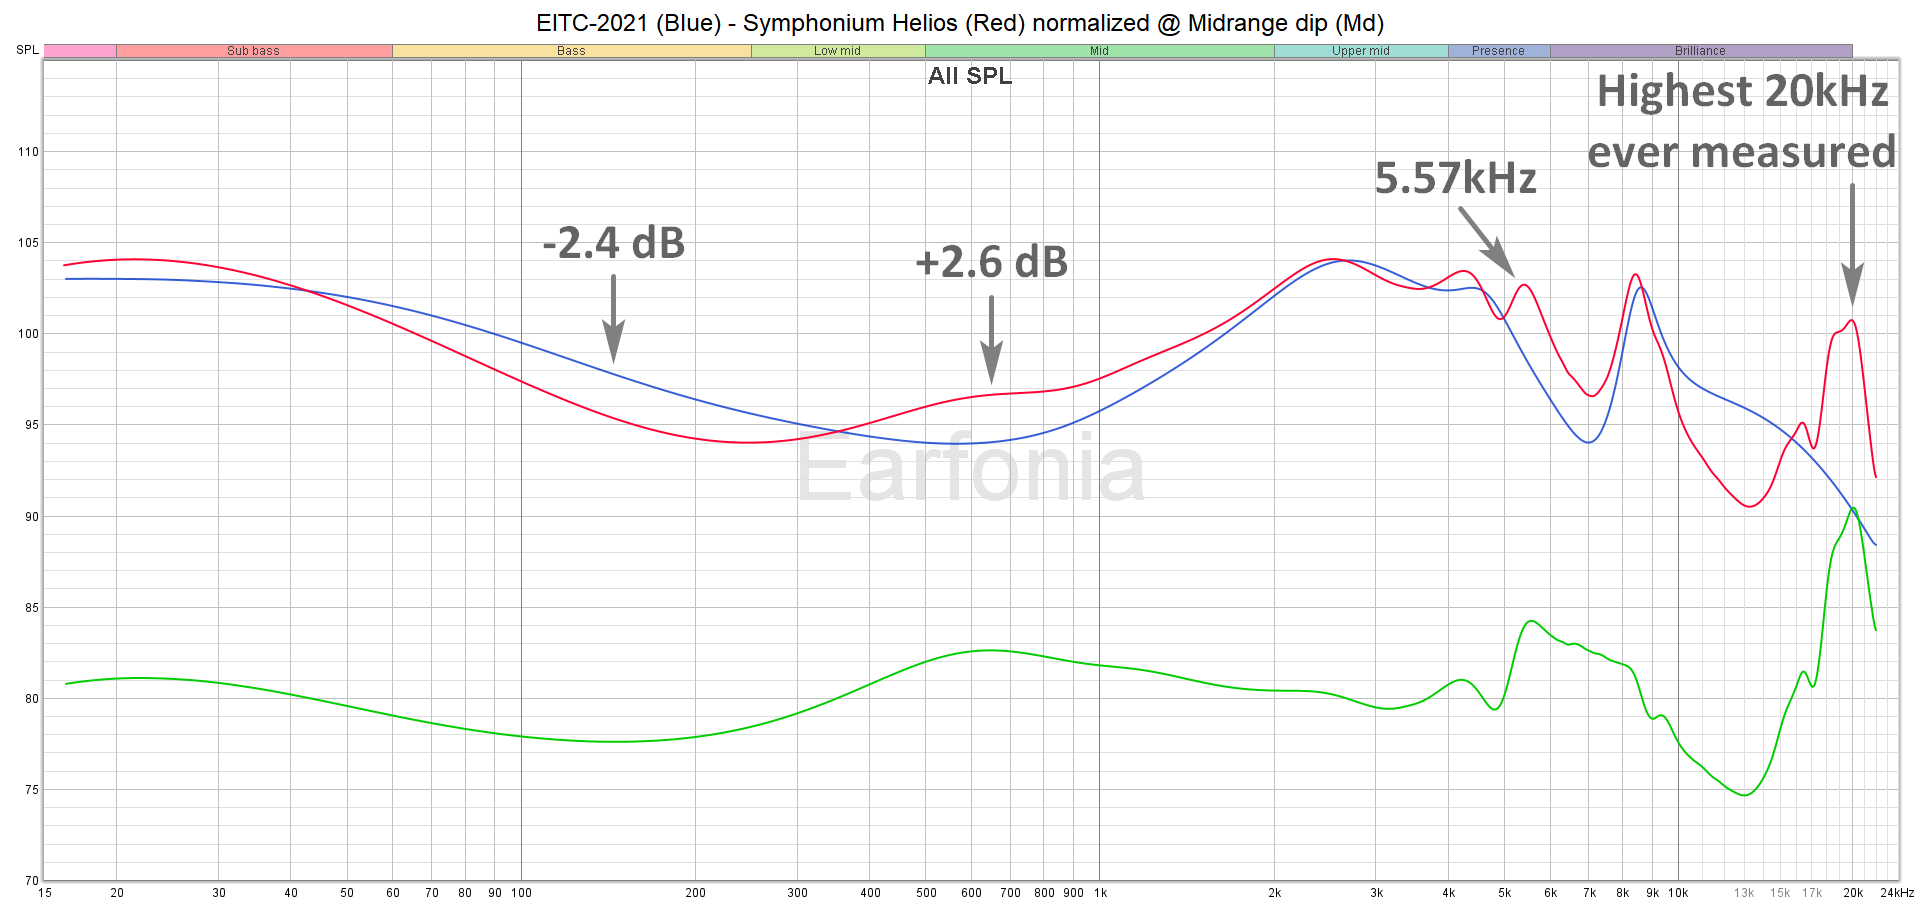 M02 EITC-2021 - Symphonium Helios normalized at Midrange Dip.png